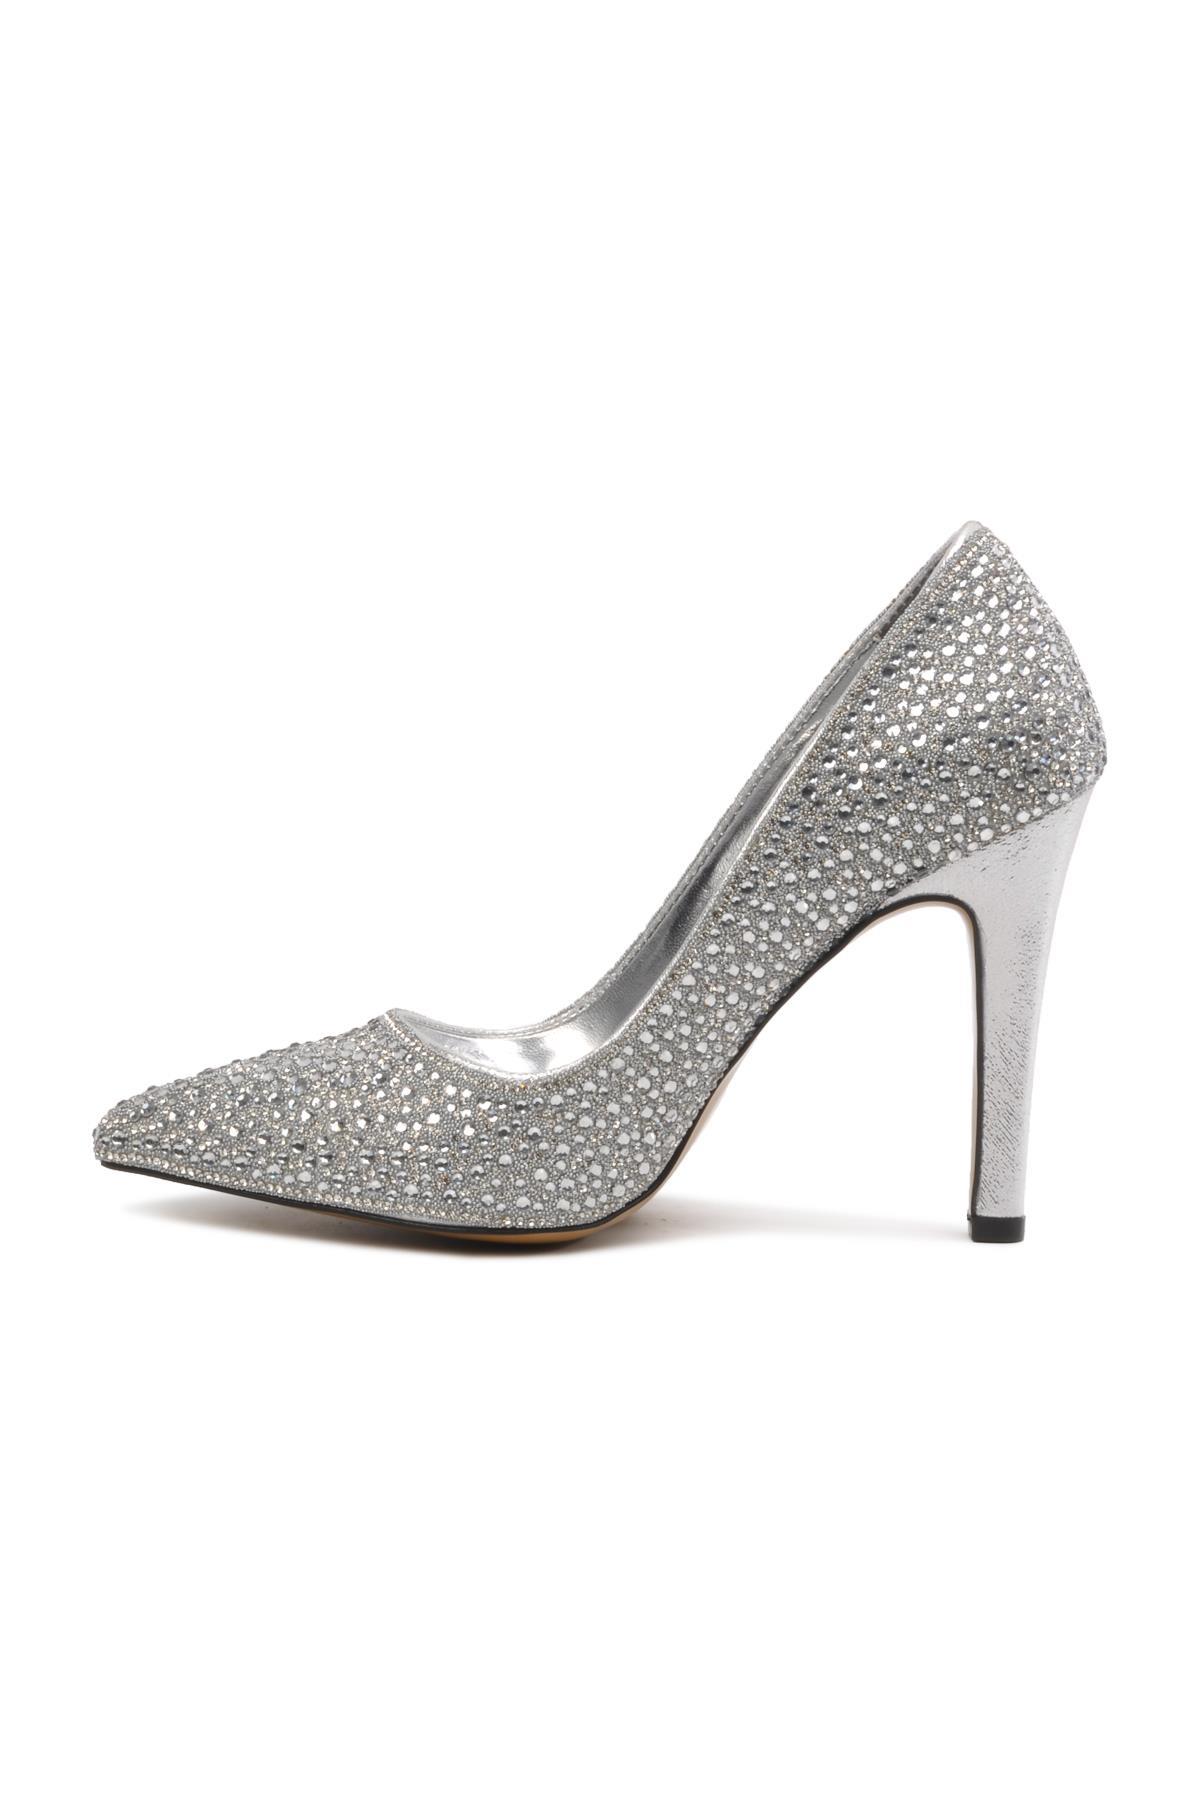 Venüs Gümüş Kadın Topuklu Stiletto Ayakkabı